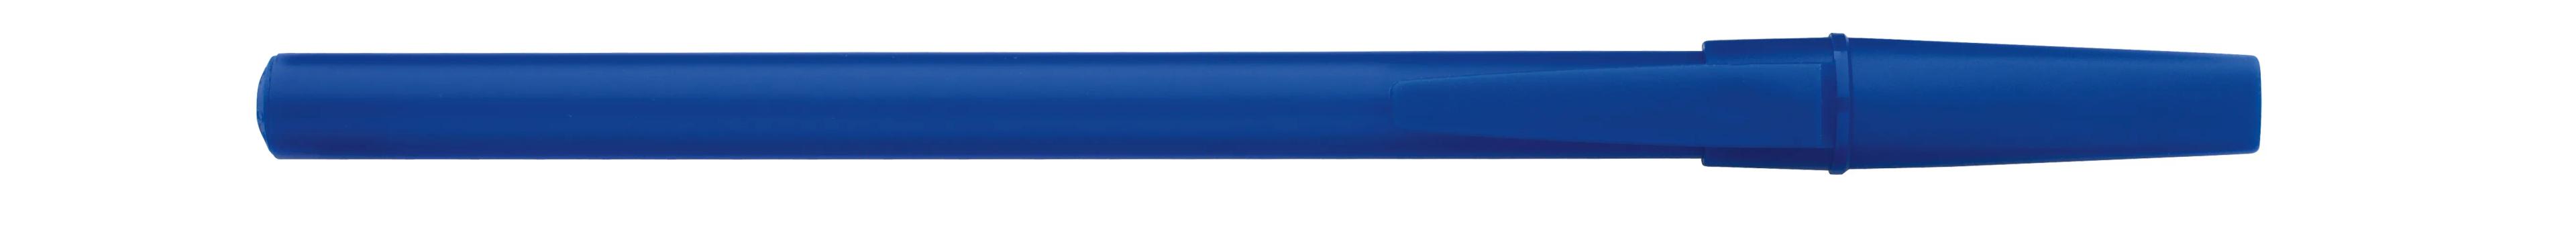 Corporate Promo Stick Pen 6 of 33